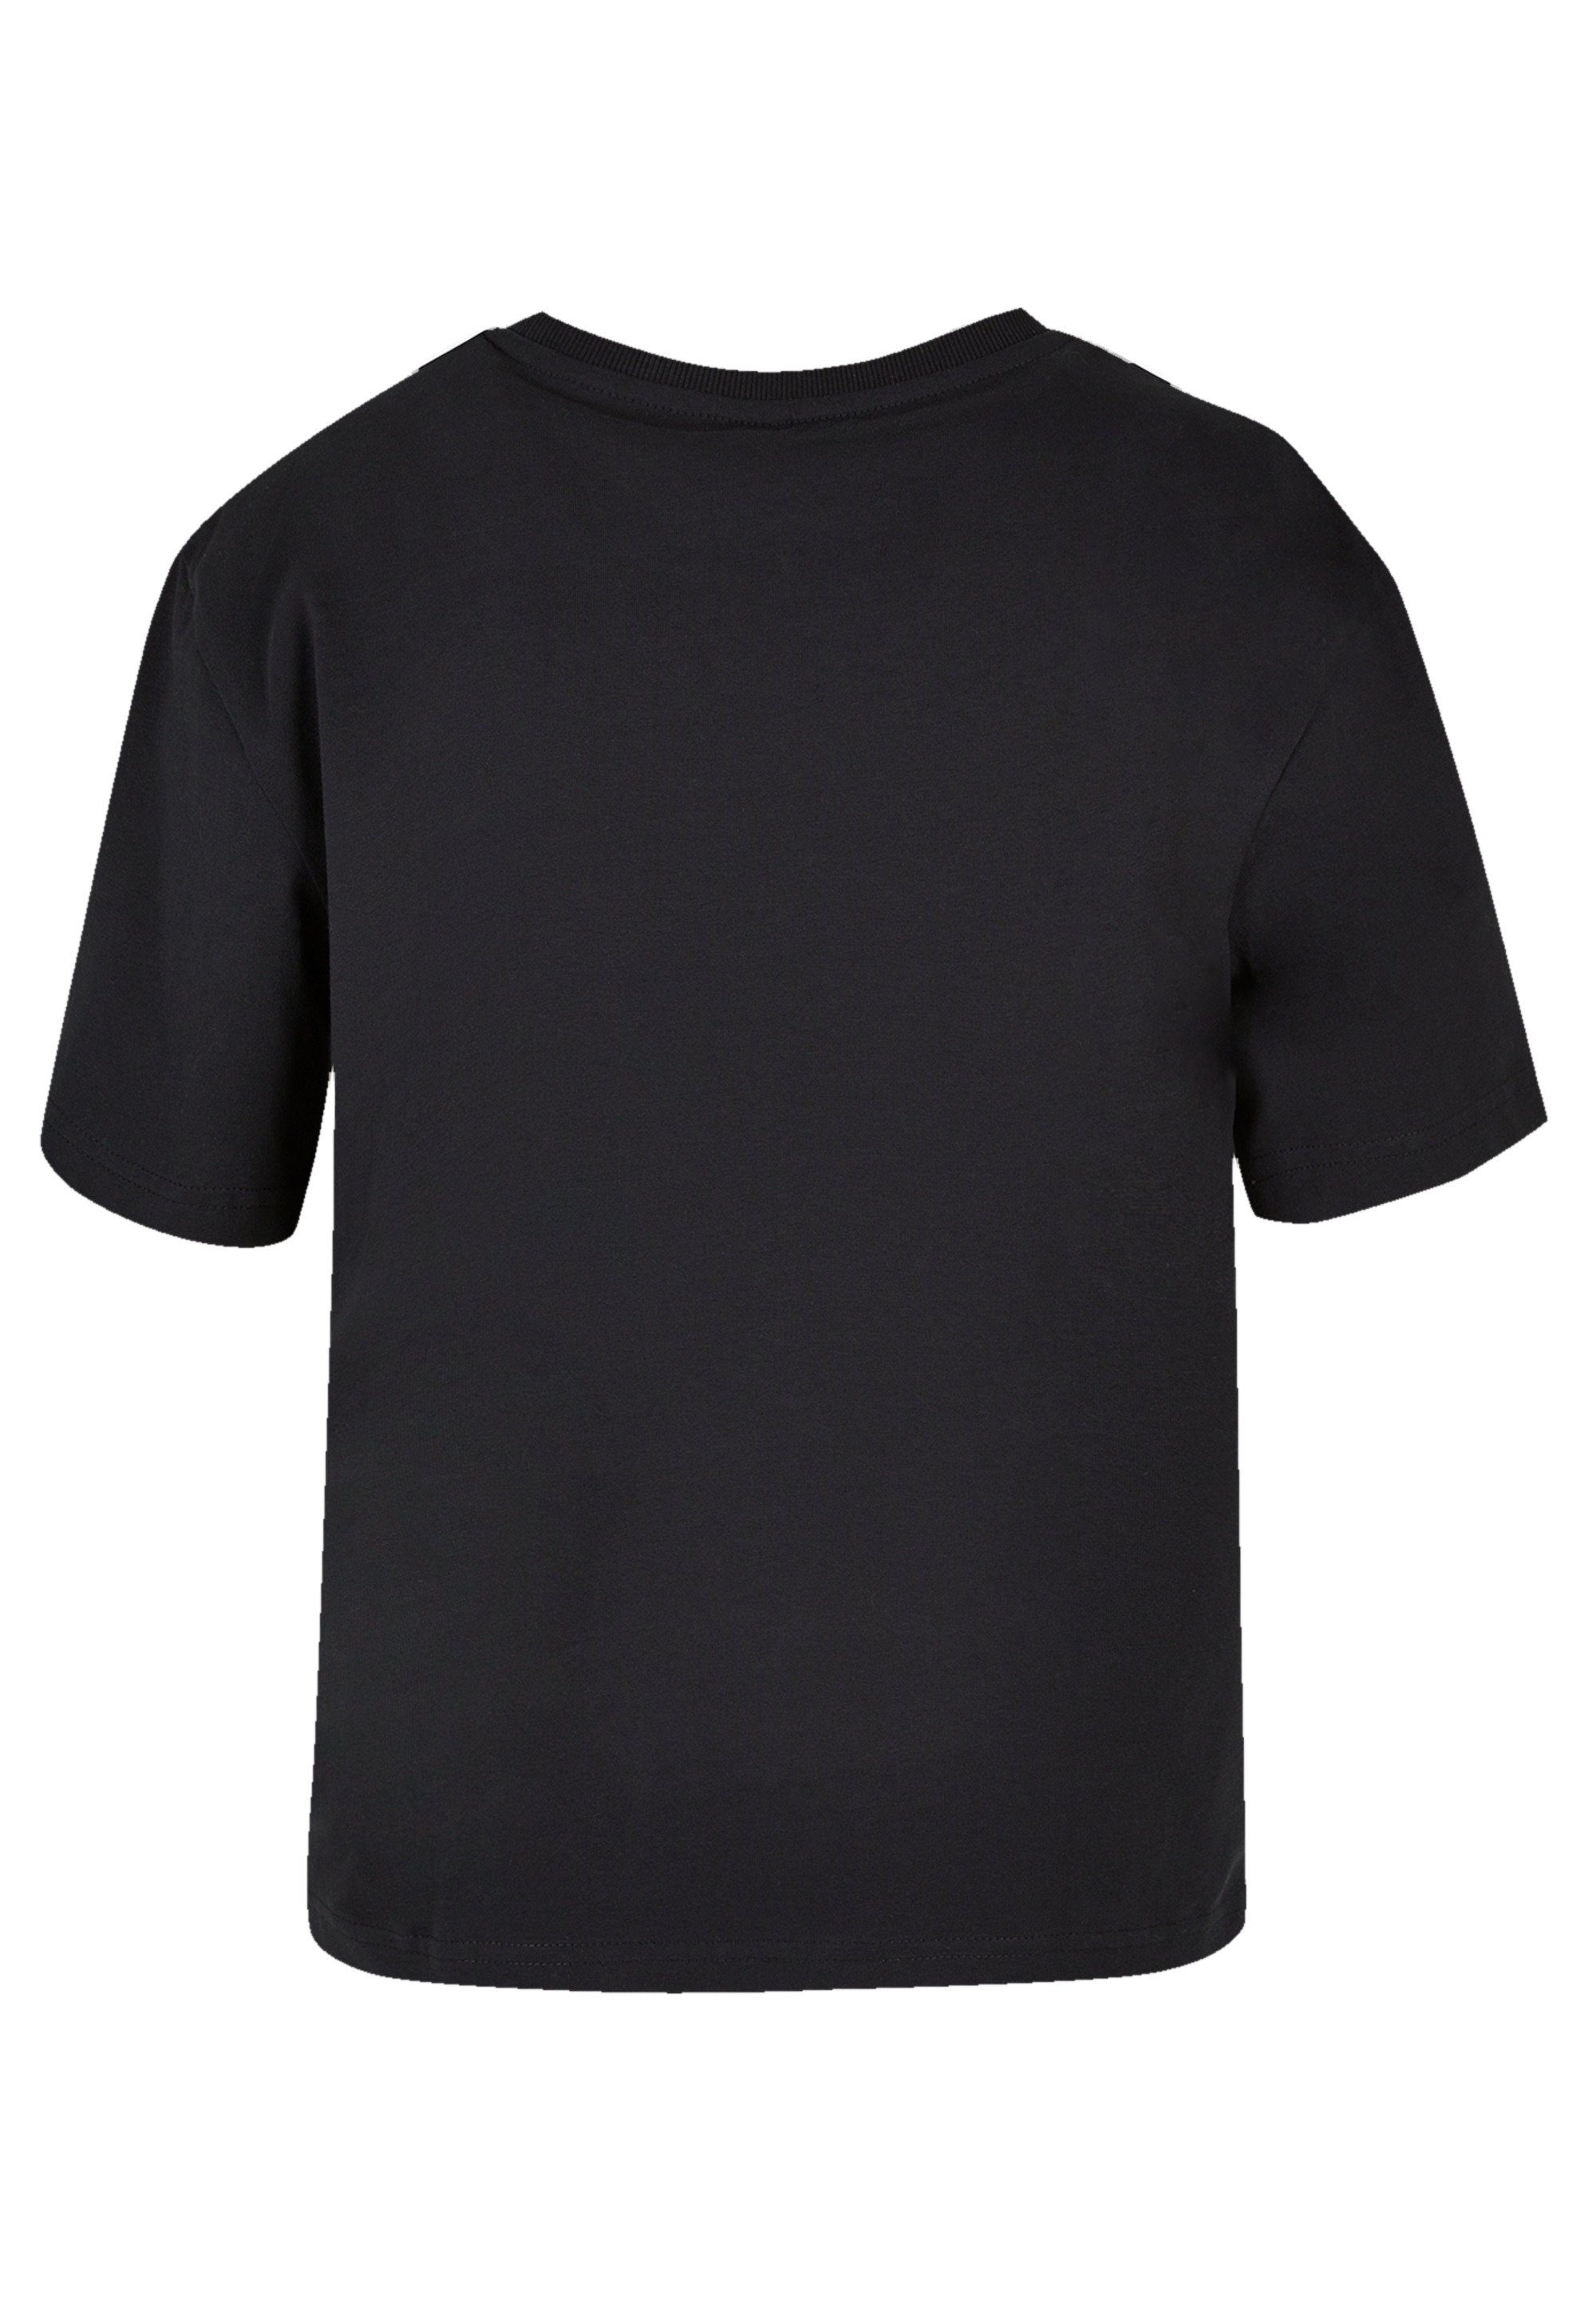 Premium Wars Turmoil F4NT4STIC Star T-Shirt Qualität